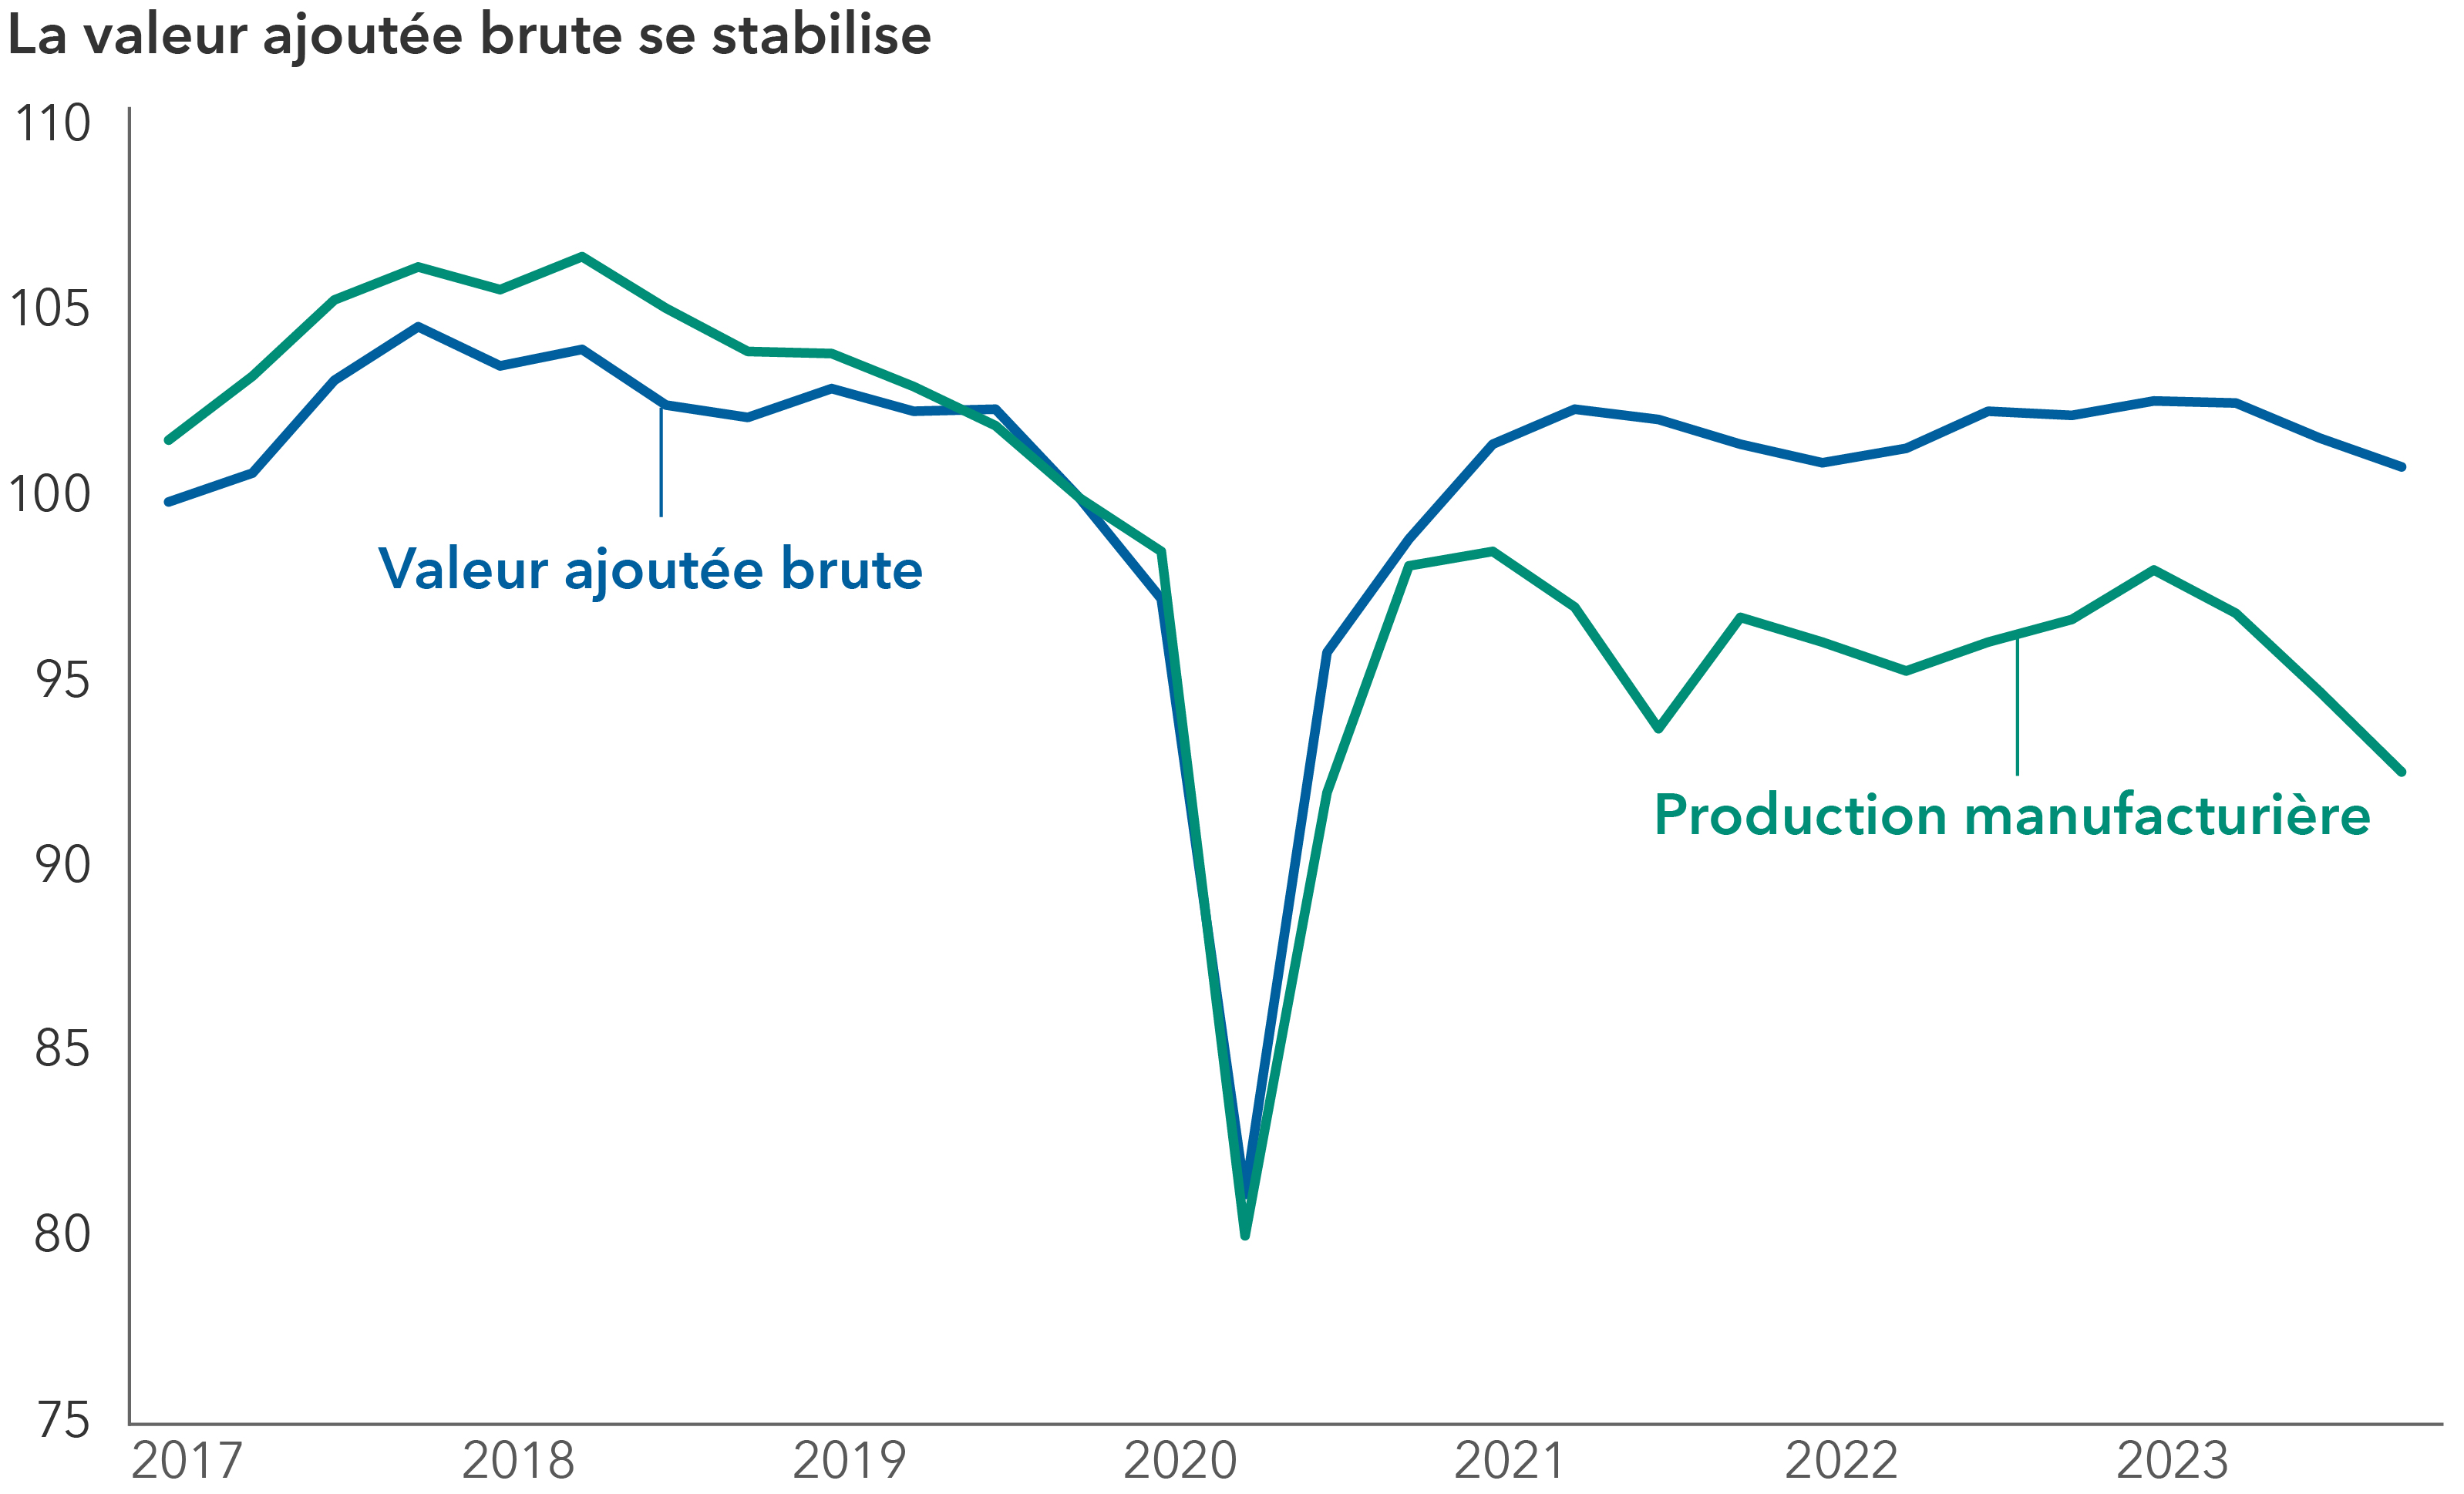 Le graphique linéaire ci-dessus présente les évolutions de deux indicateurs économiques, la production manufacturière allemande et la valeur ajoutée brute (VAB), de 2017 à 2023. Le graphique contient deux lignes : la première représente la valeur ajoutée brute (VAB). La deuxième représente la production manufacturière. Les deux lignes suivent une tendance similaire. Elles augmentent jusqu’en 2019, puis connaissent une forte baisse en 2020. Après 2020, les deux lignes enregistrent une reprise partielle au cours des années suivantes, sans pour autant retrouver leur niveau record précédent à la fin de 2023. L’axe des abscisses indique les intervalles trimestriels de 2017 à fin 2023, et l’axe des ordonnées représente l’indice de la production manufacturière et de la VAB, le quatrième trimestre de 2019 servant d’indice de base ou de référence.